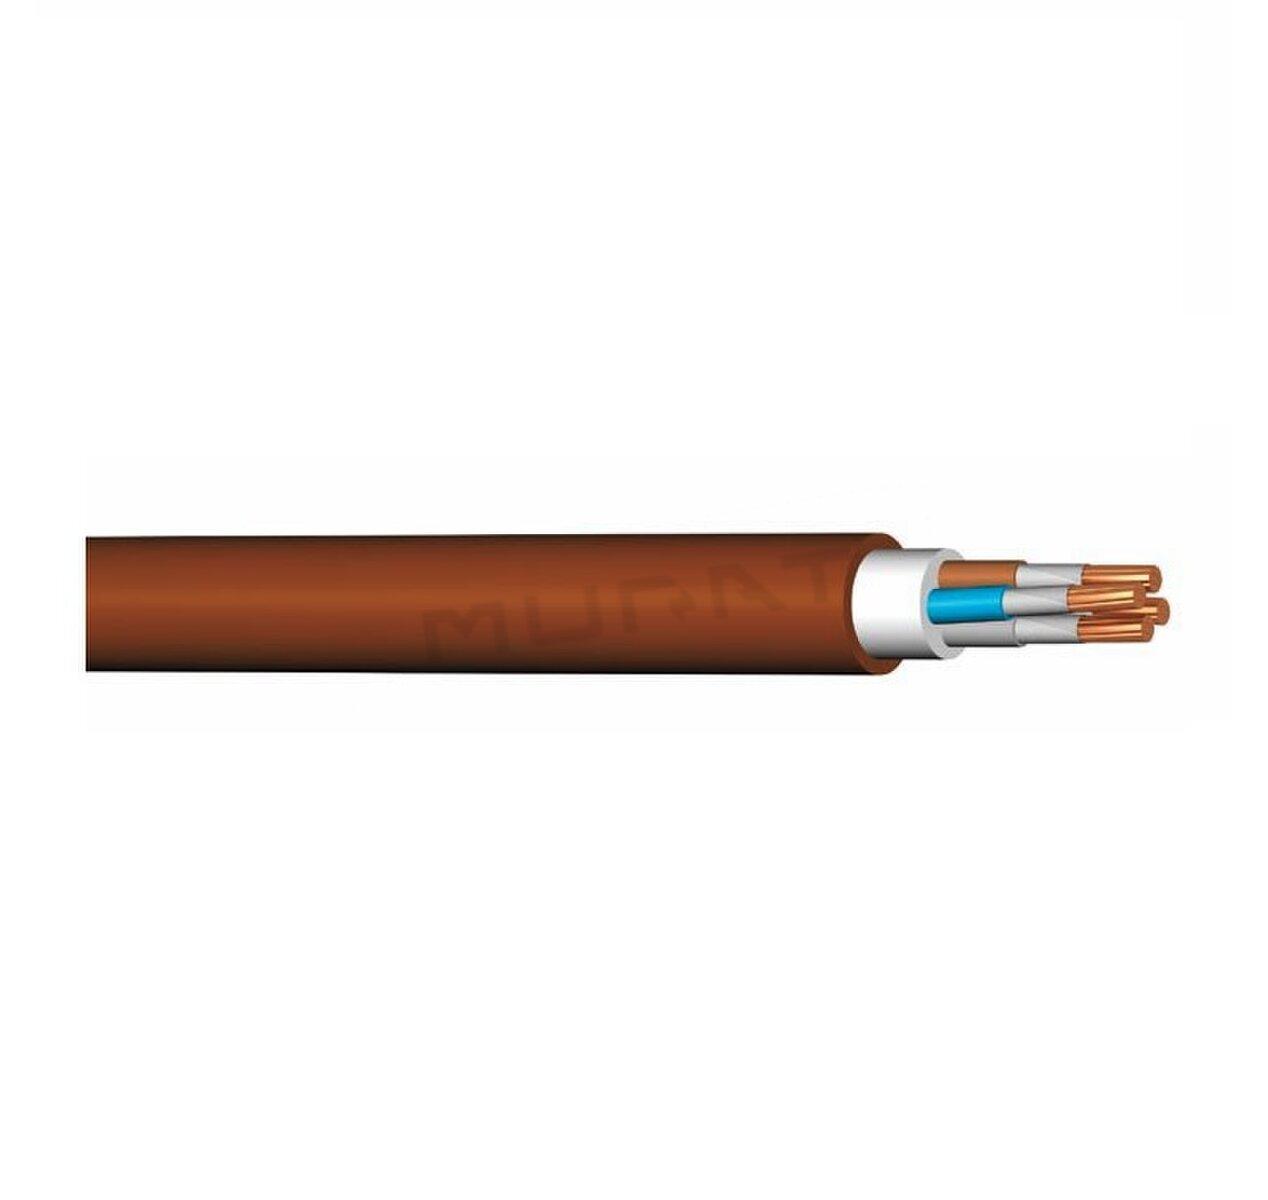 Kábel PRAFlaDur 90-J 3x2,5 mm2 RE P90-R silový